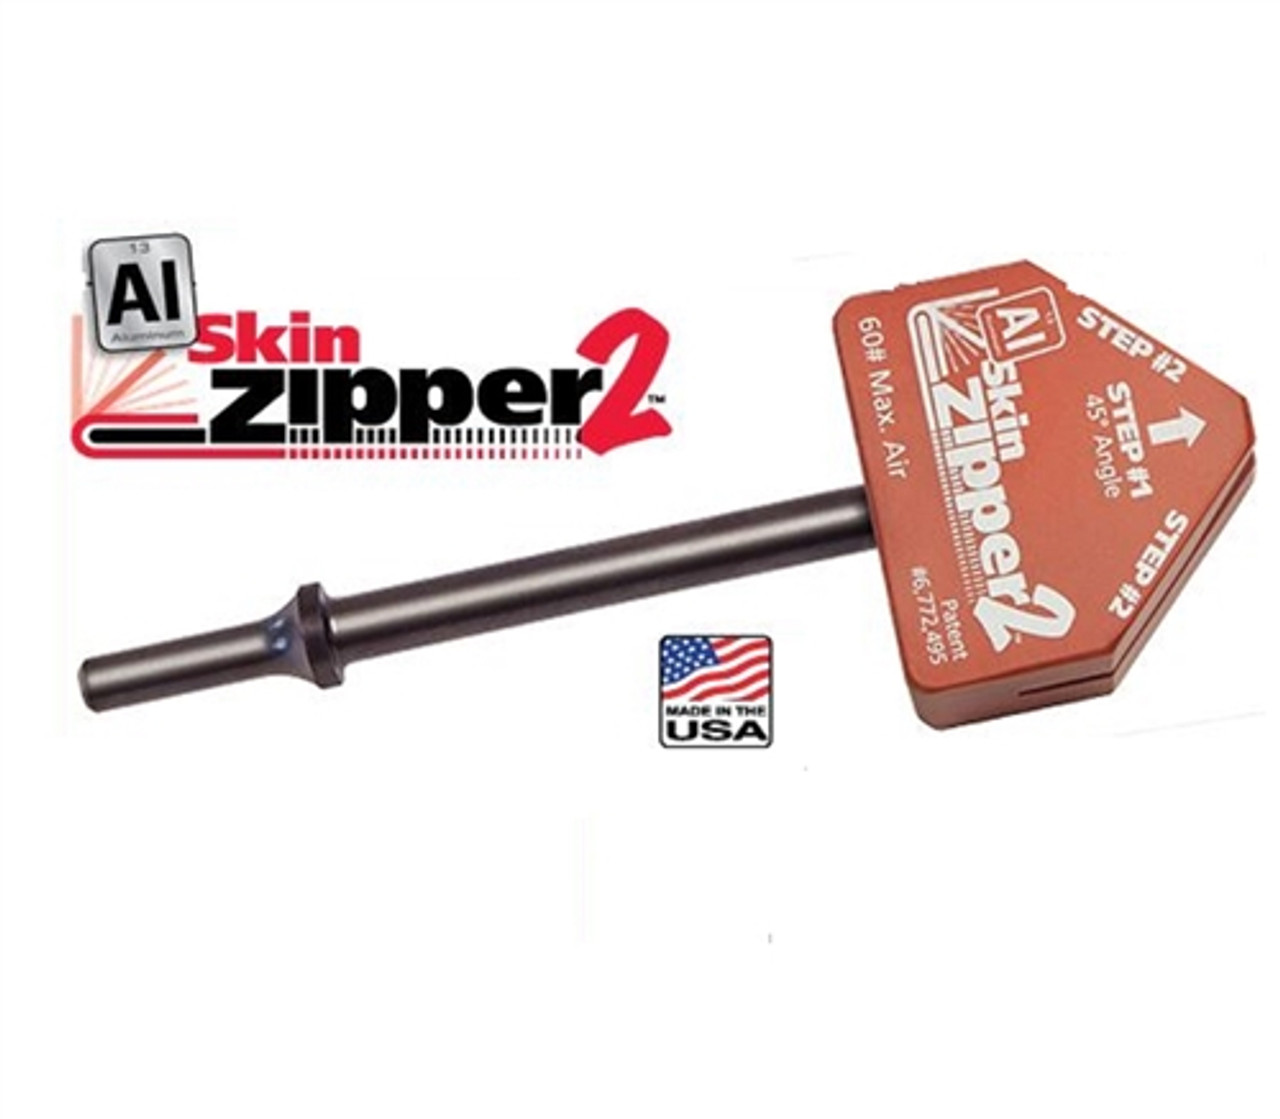 Steck 21896 AIuminum Skin Zipper 2